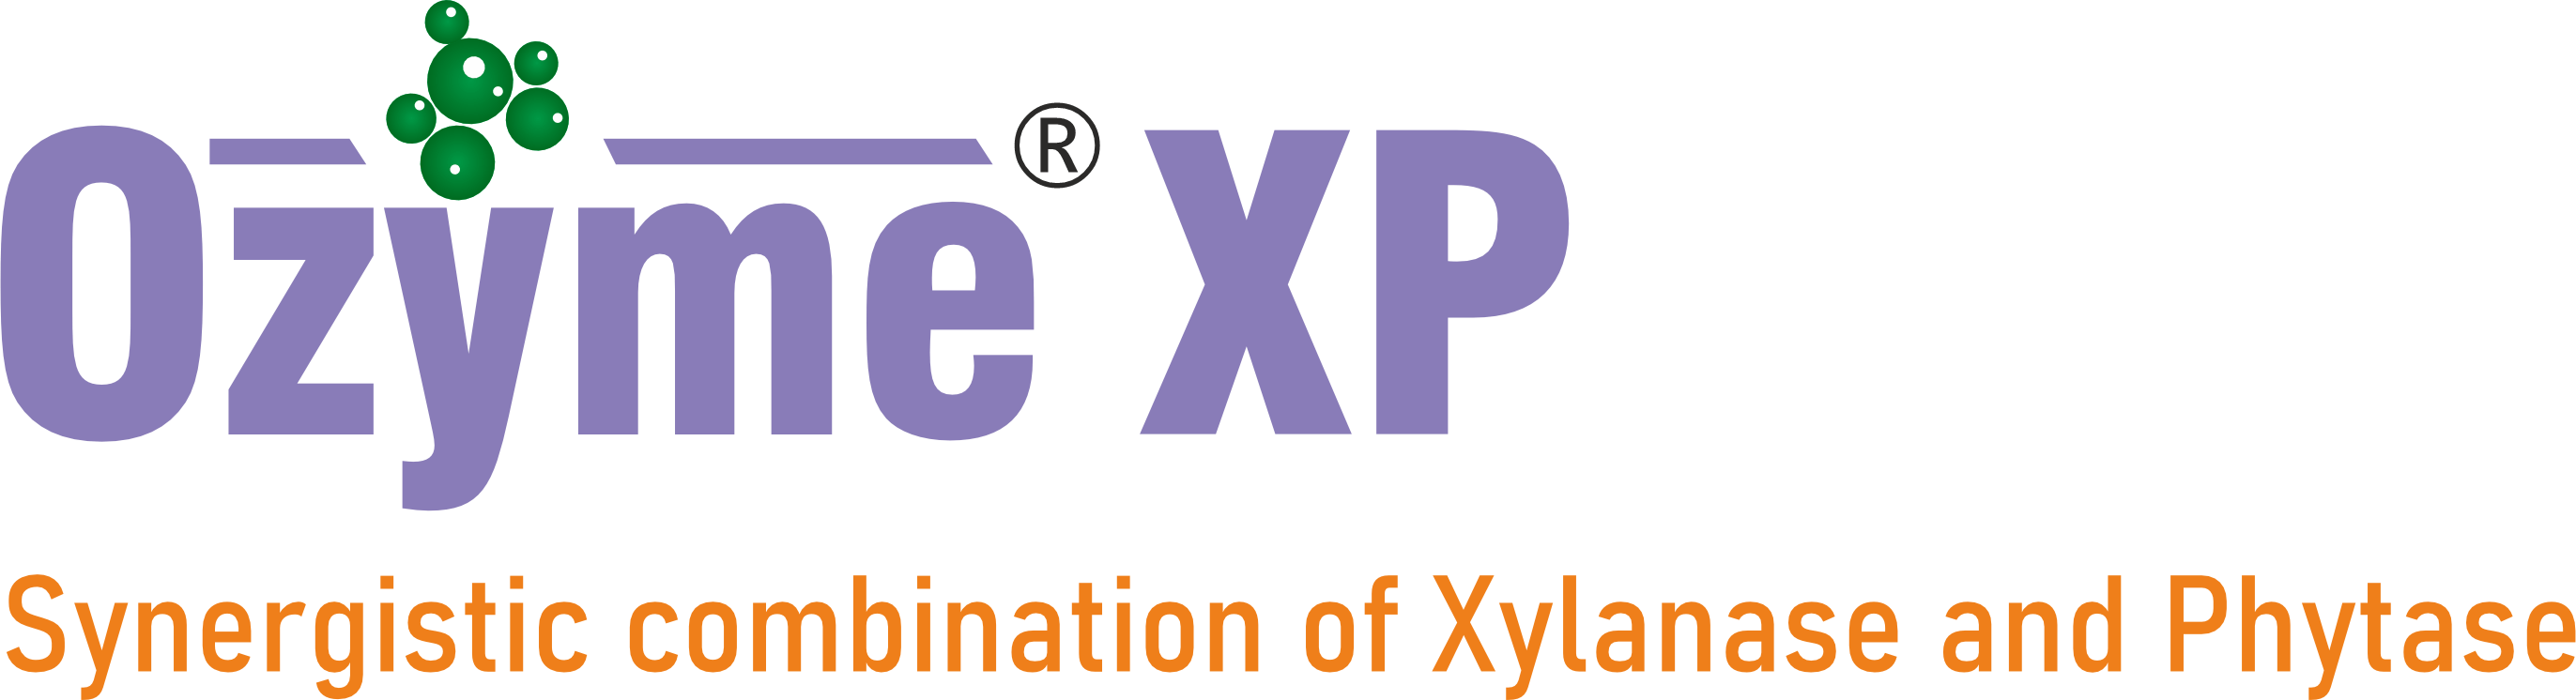 Ozyme XP logo